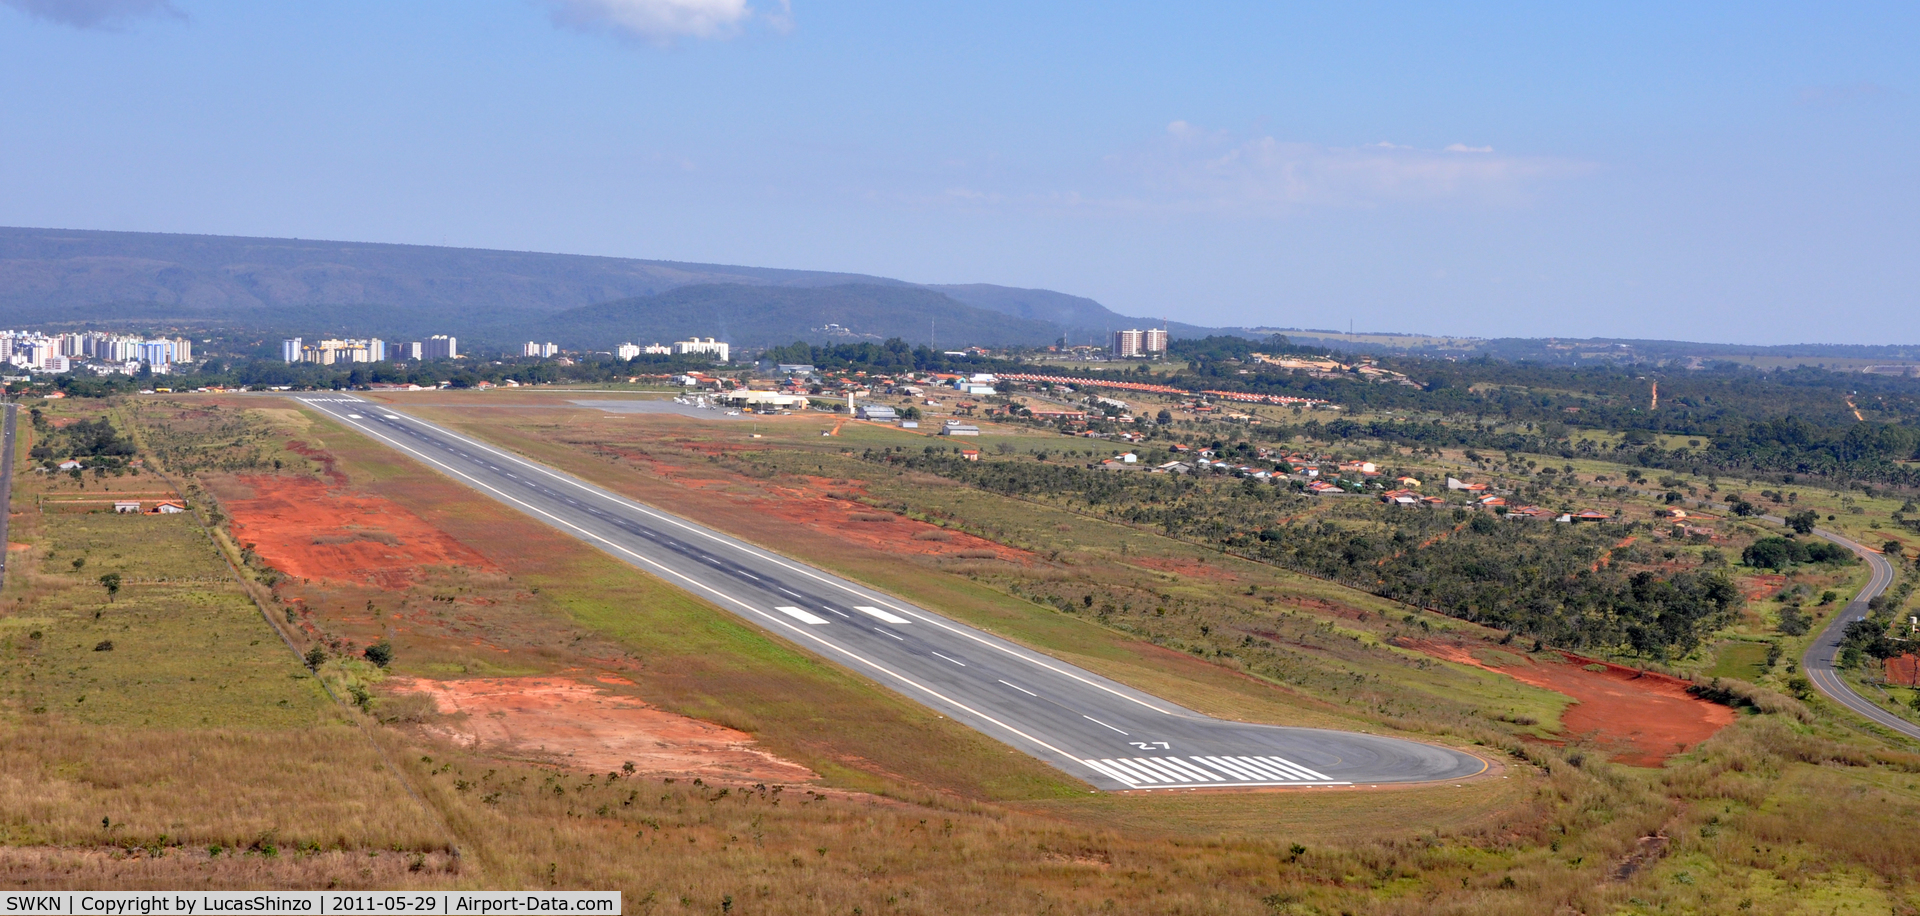 Caldas Novas Airport, Caldas Novas, Goiás Brazil (SWKN) - vista aerea